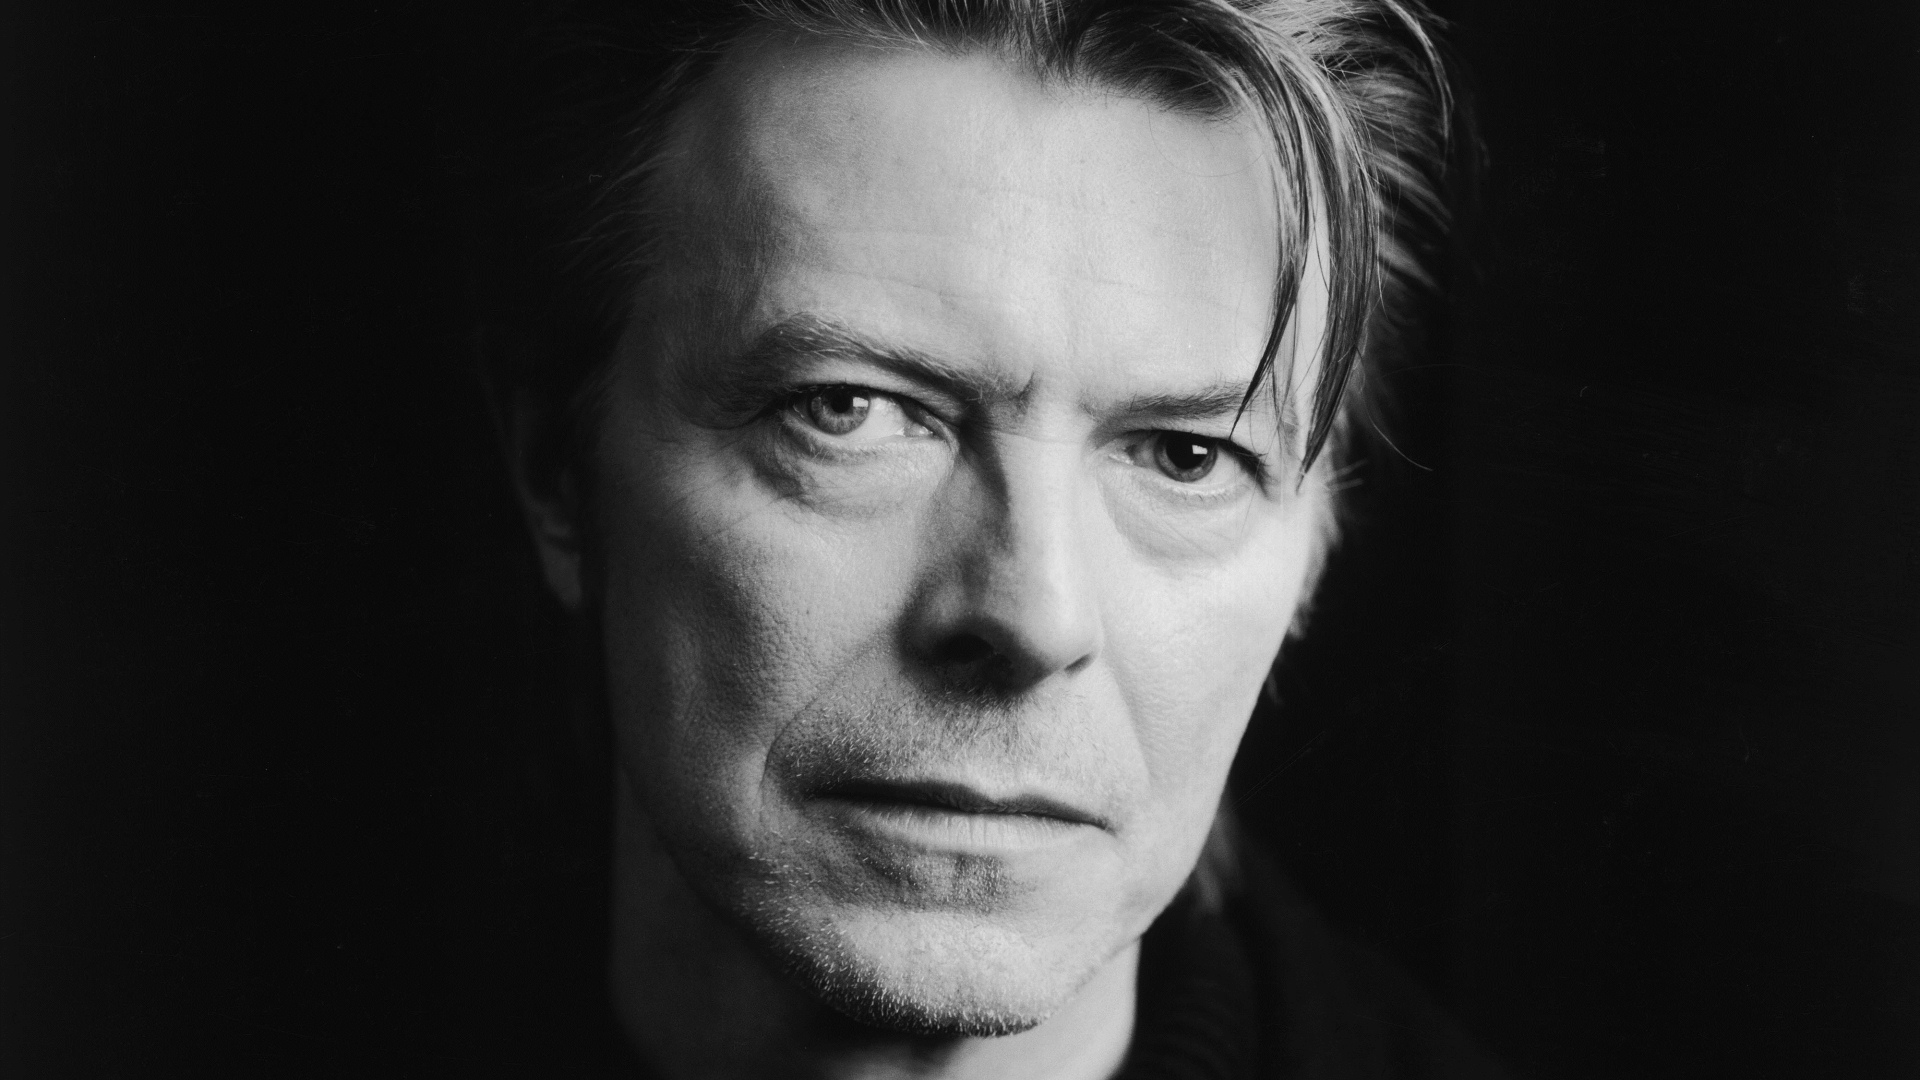 David Bowie - No Plan